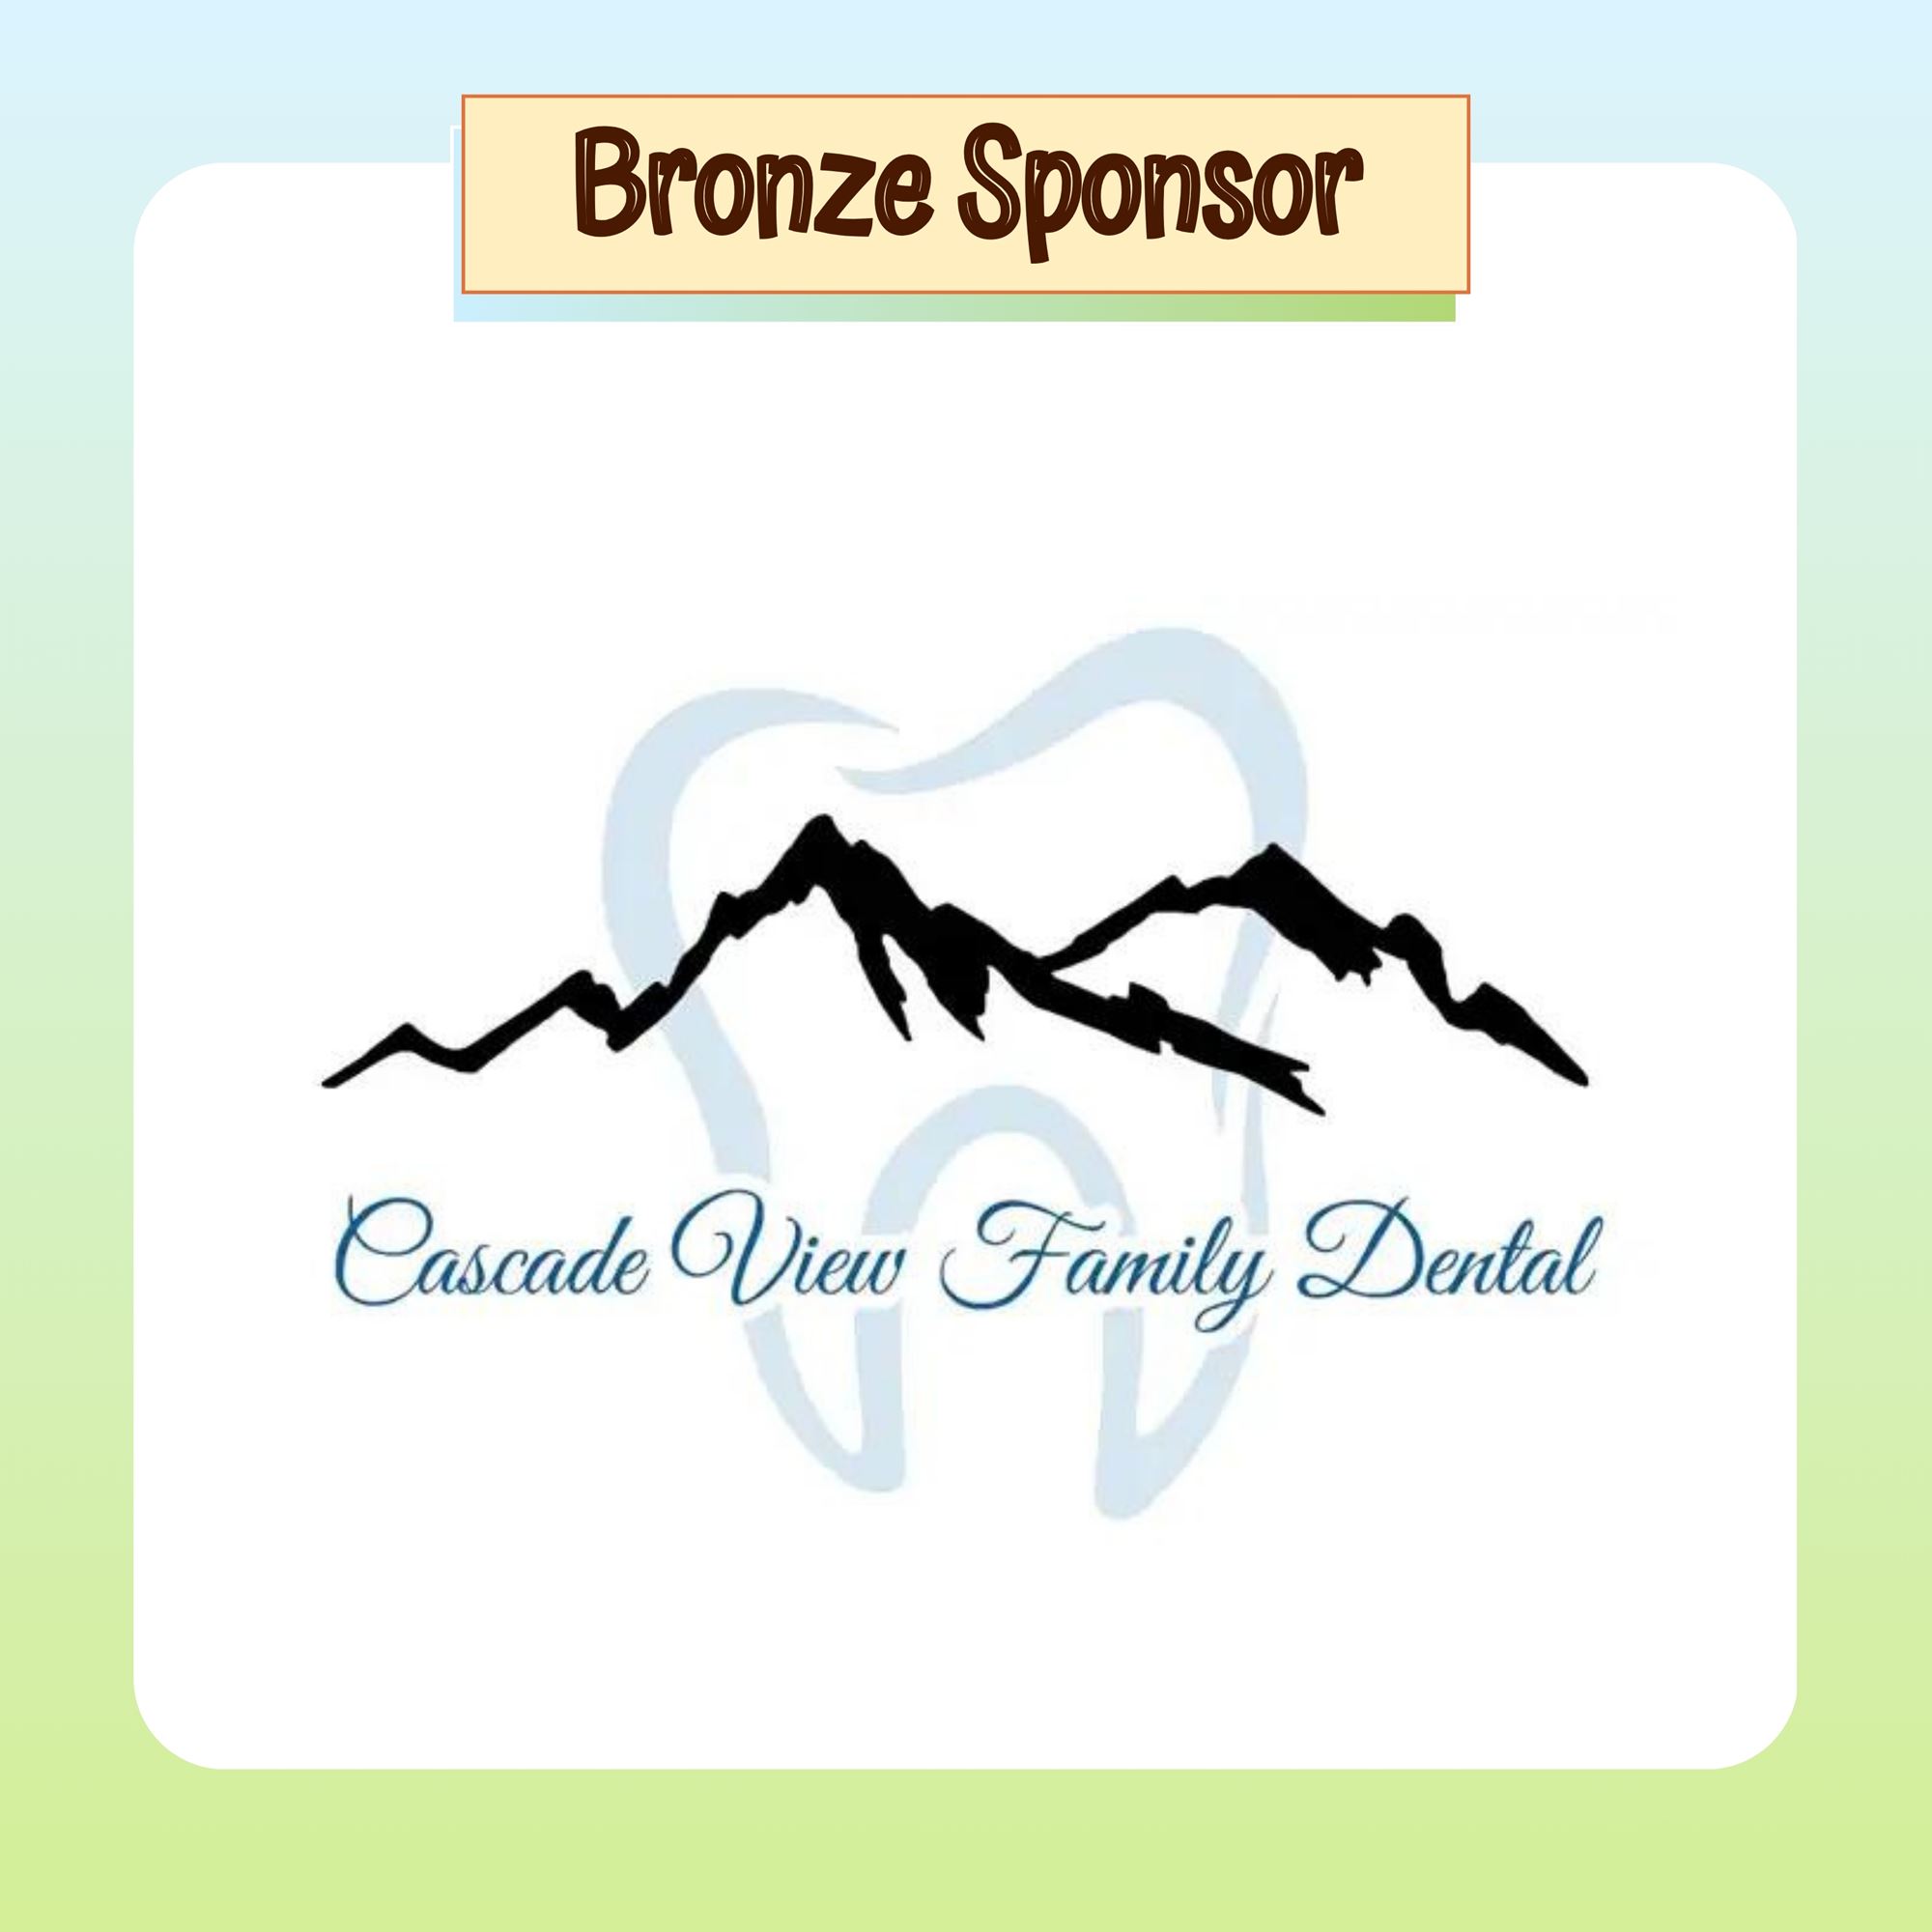 Bronze Sponsor: Cascade View Family Dental